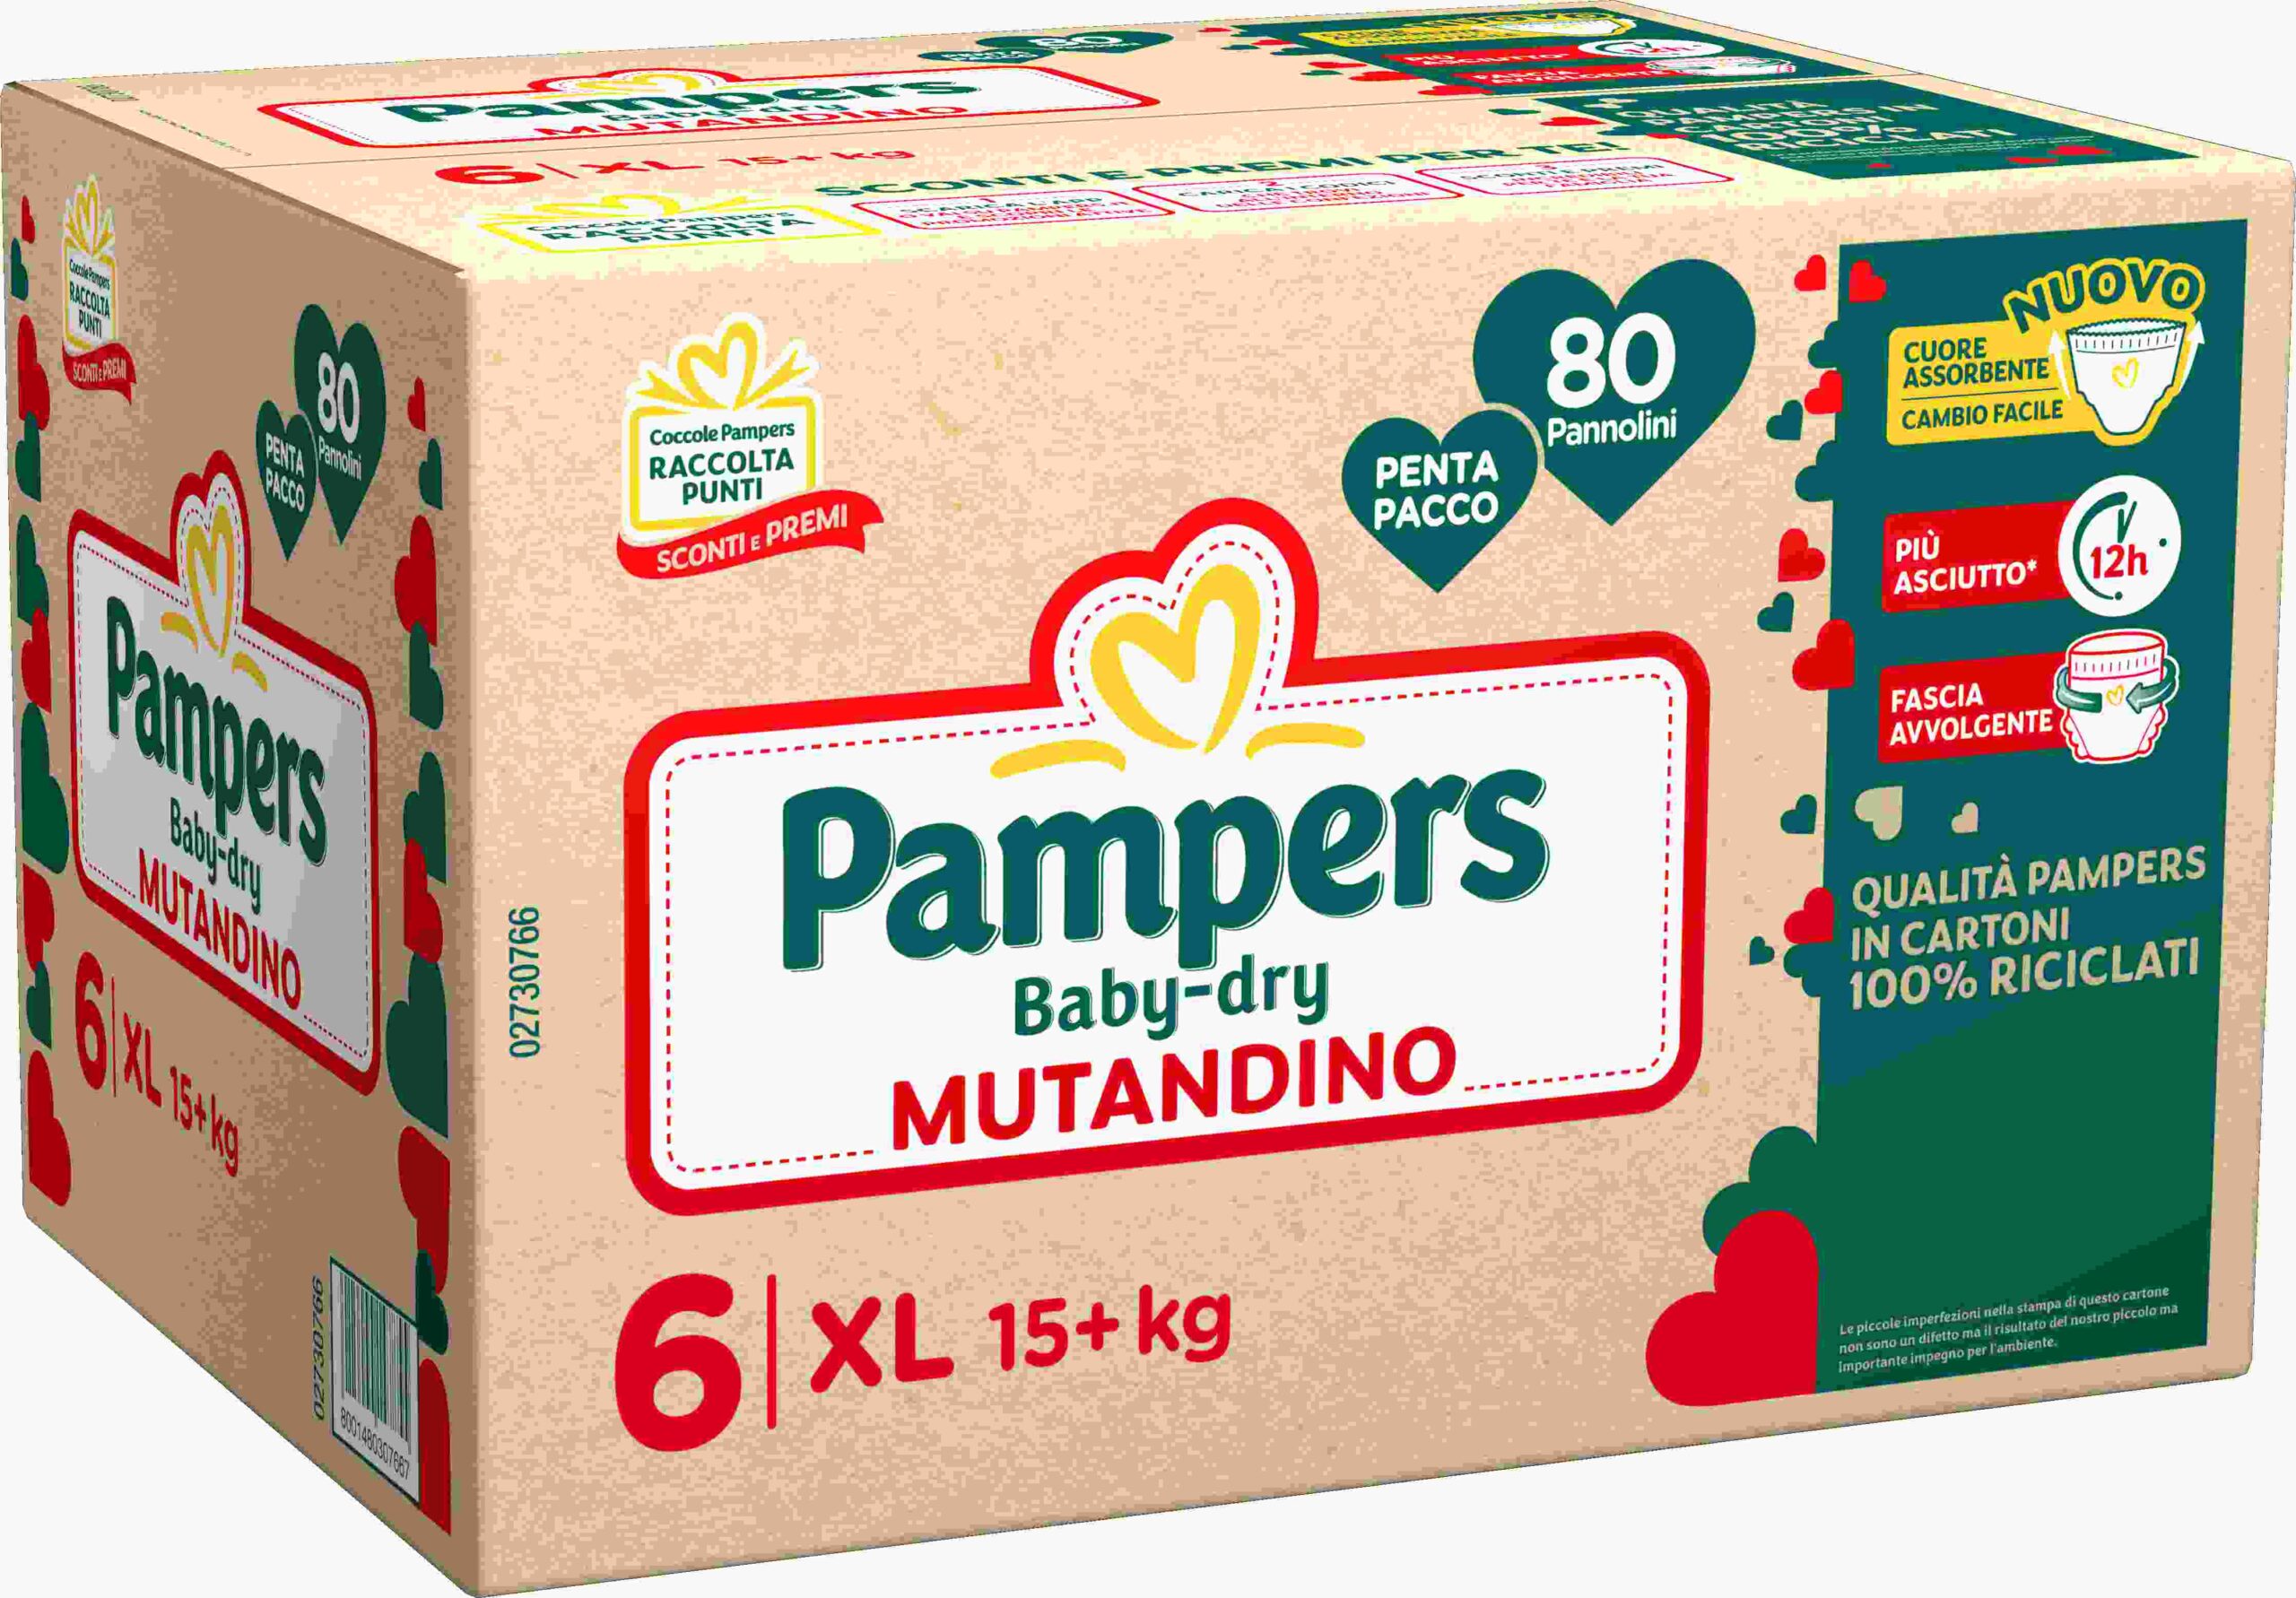 Pampers baby-dry mutandino penta xl 80 pz